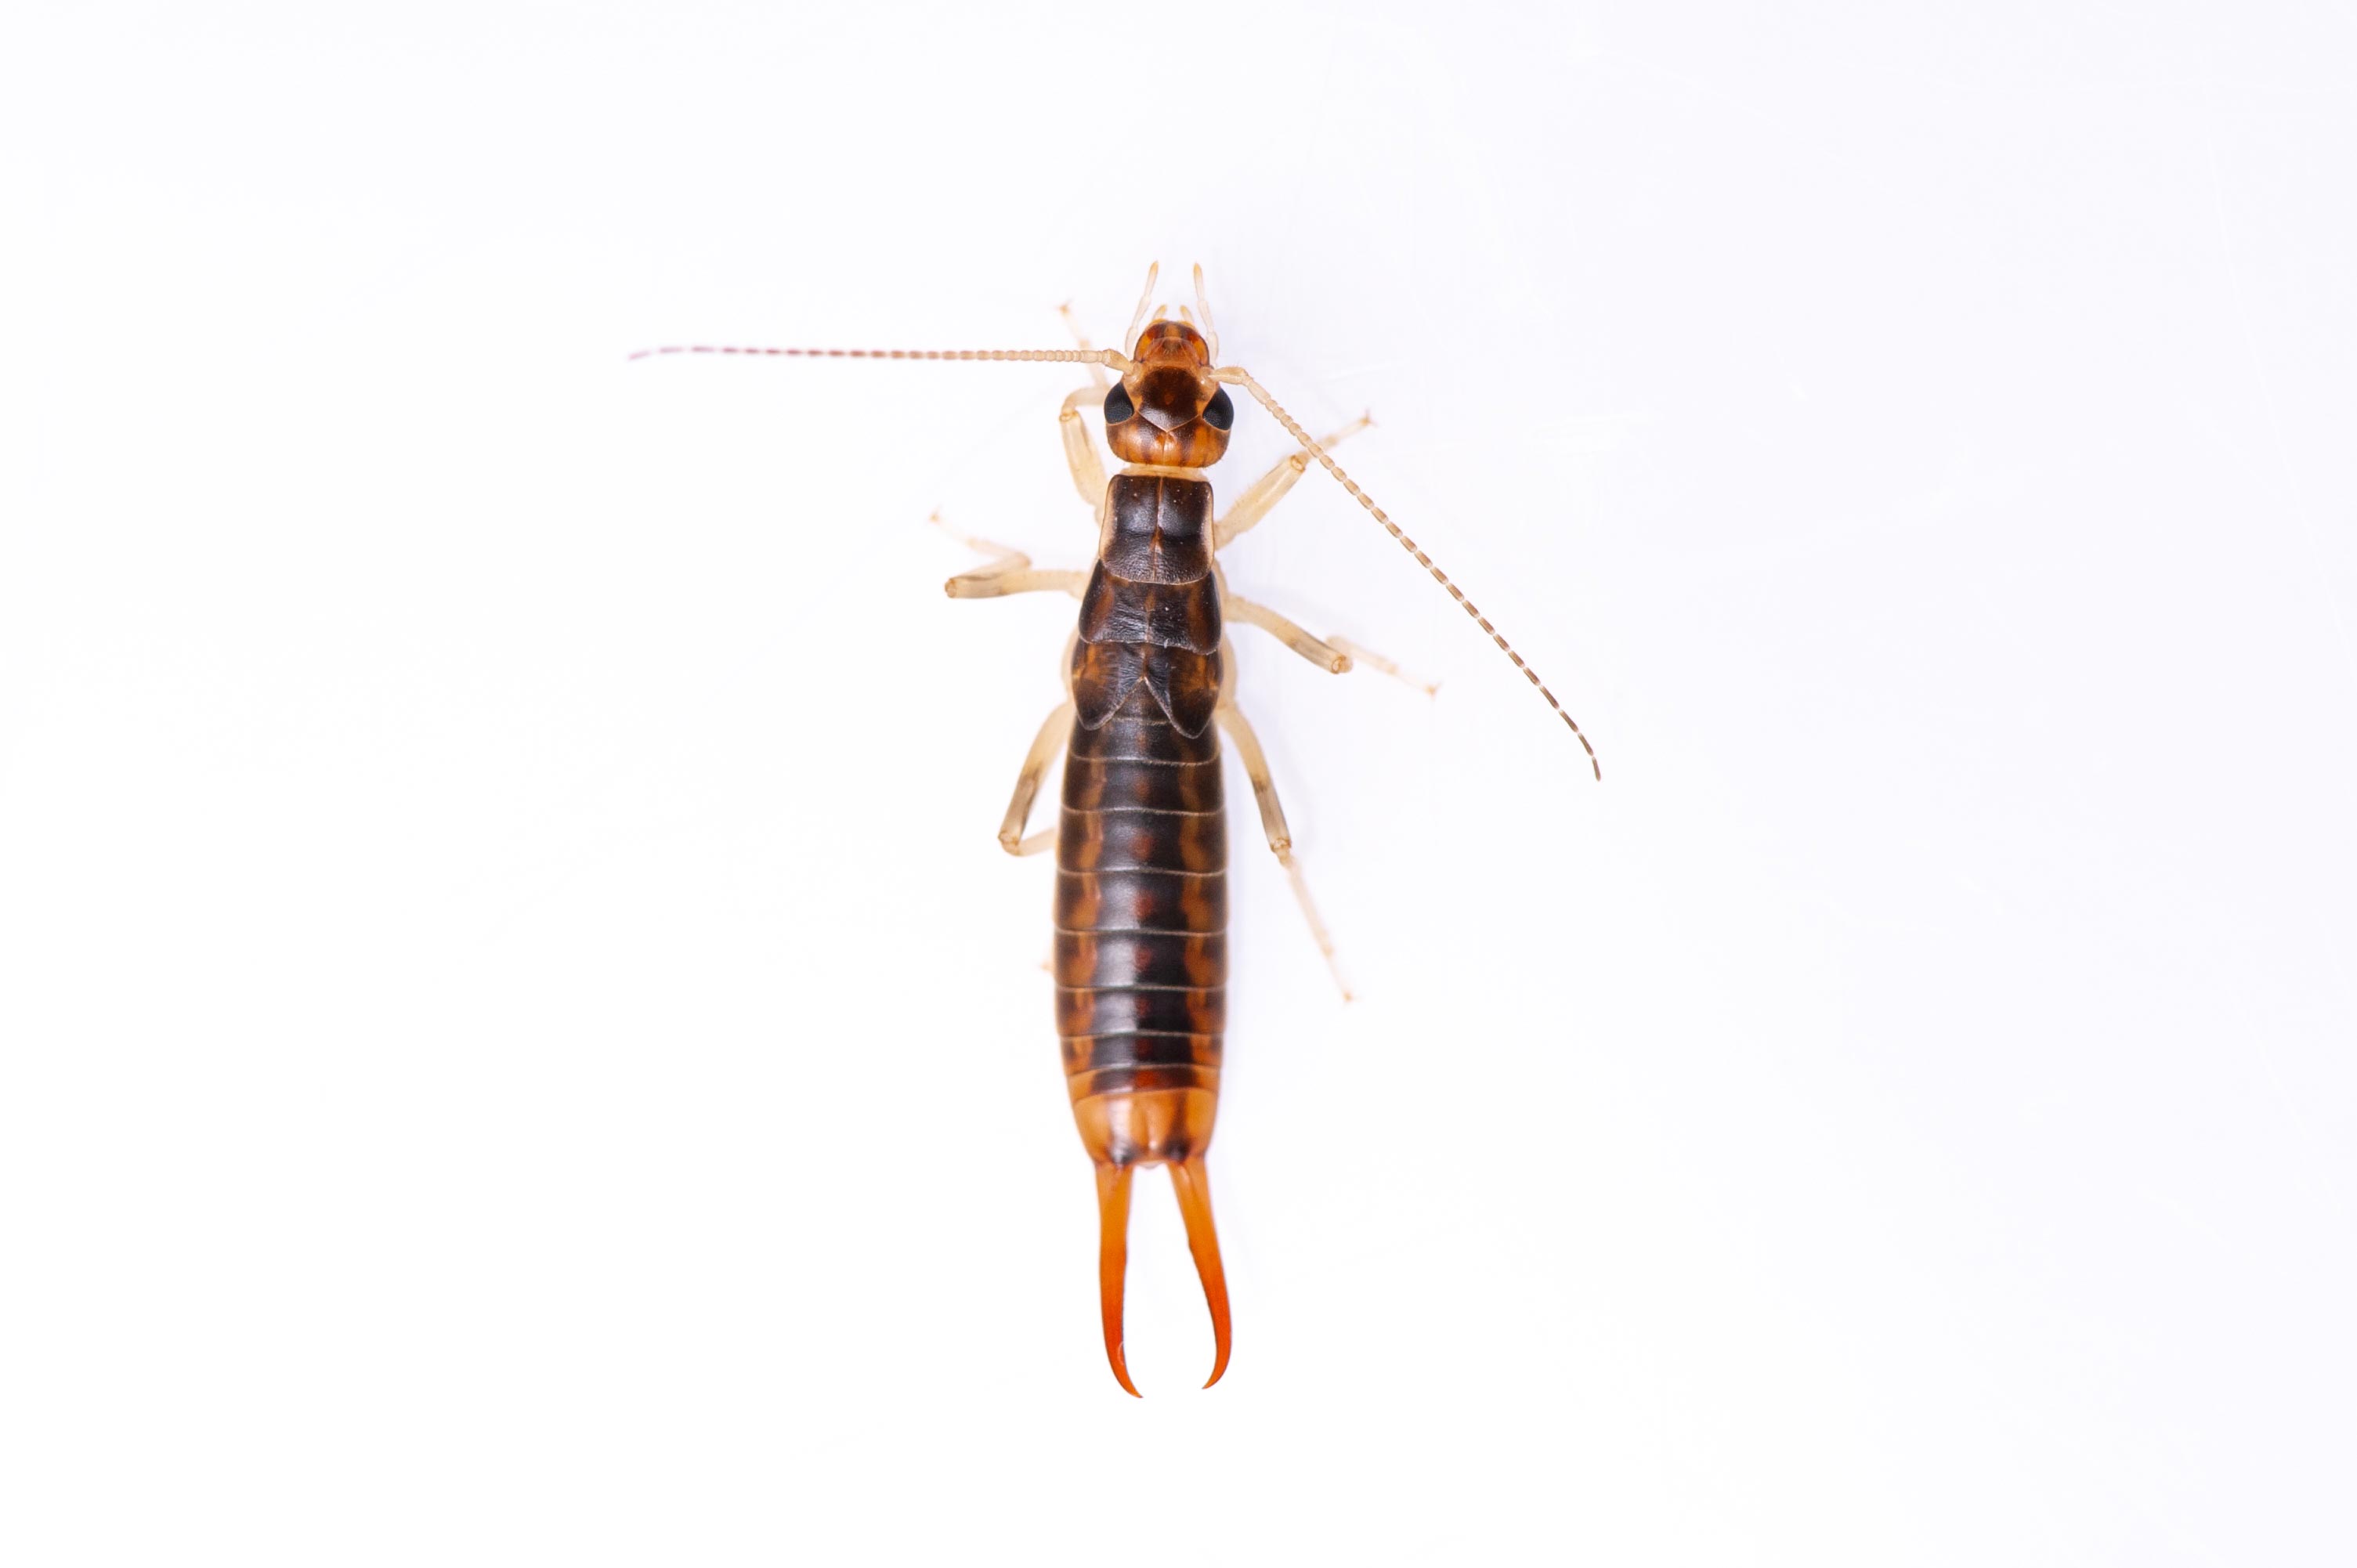 オオハサミムシ 虫の写真と生態なら昆虫写真図鑑 ムシミル